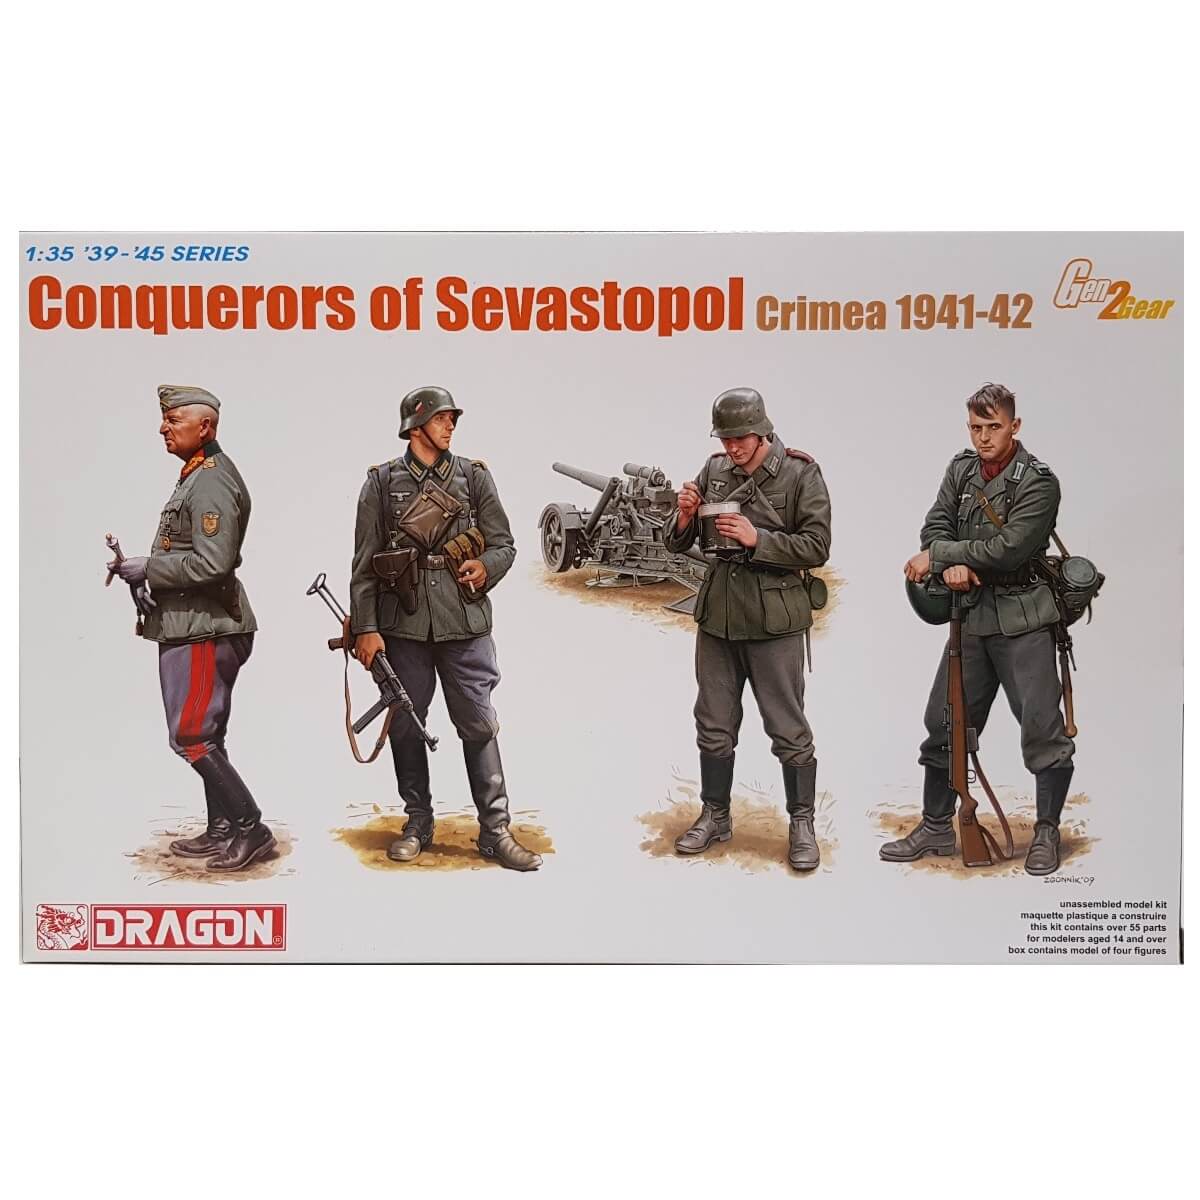 1:35 Conquerors of Sevastopol - Crimea 1941-42 - DRAGON